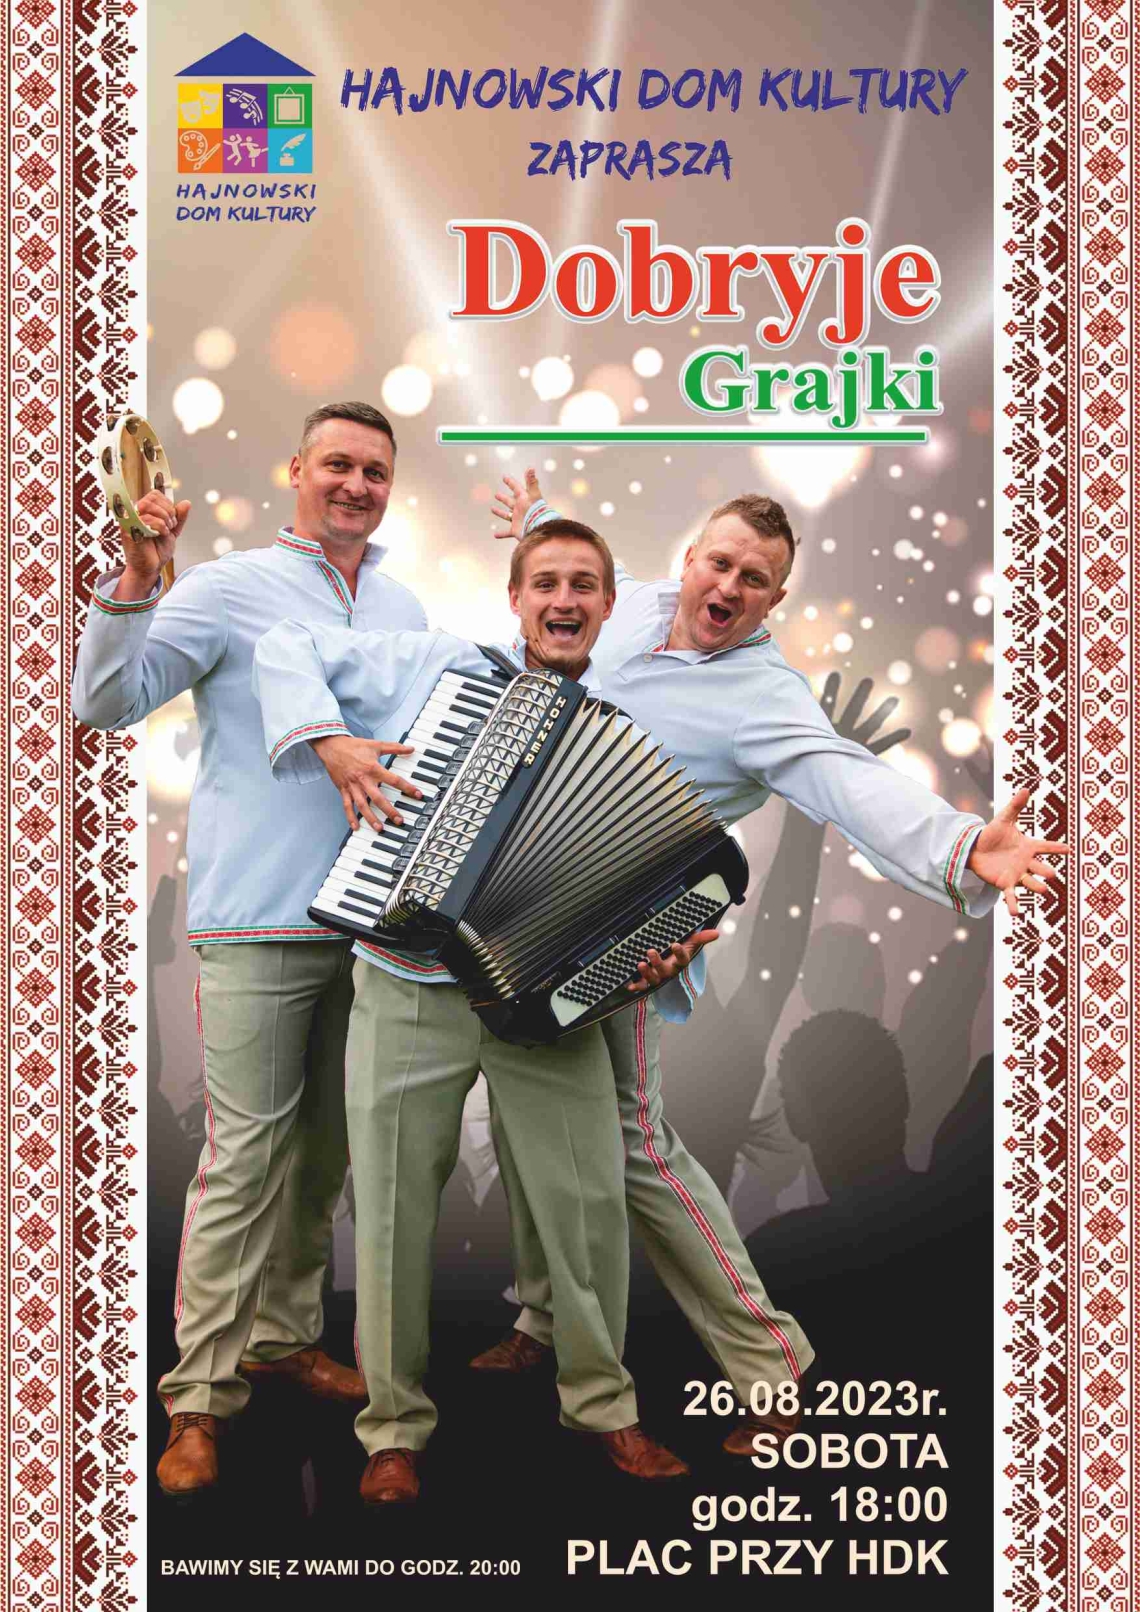 plakat wydarzenia, w centralnym punkcie trzech mężczyz w białych koszulach, jeden z nich trzyma w rękach harmonię; po bokach ozdobnik we wzór białoruski; w tle także informacje o koncercie